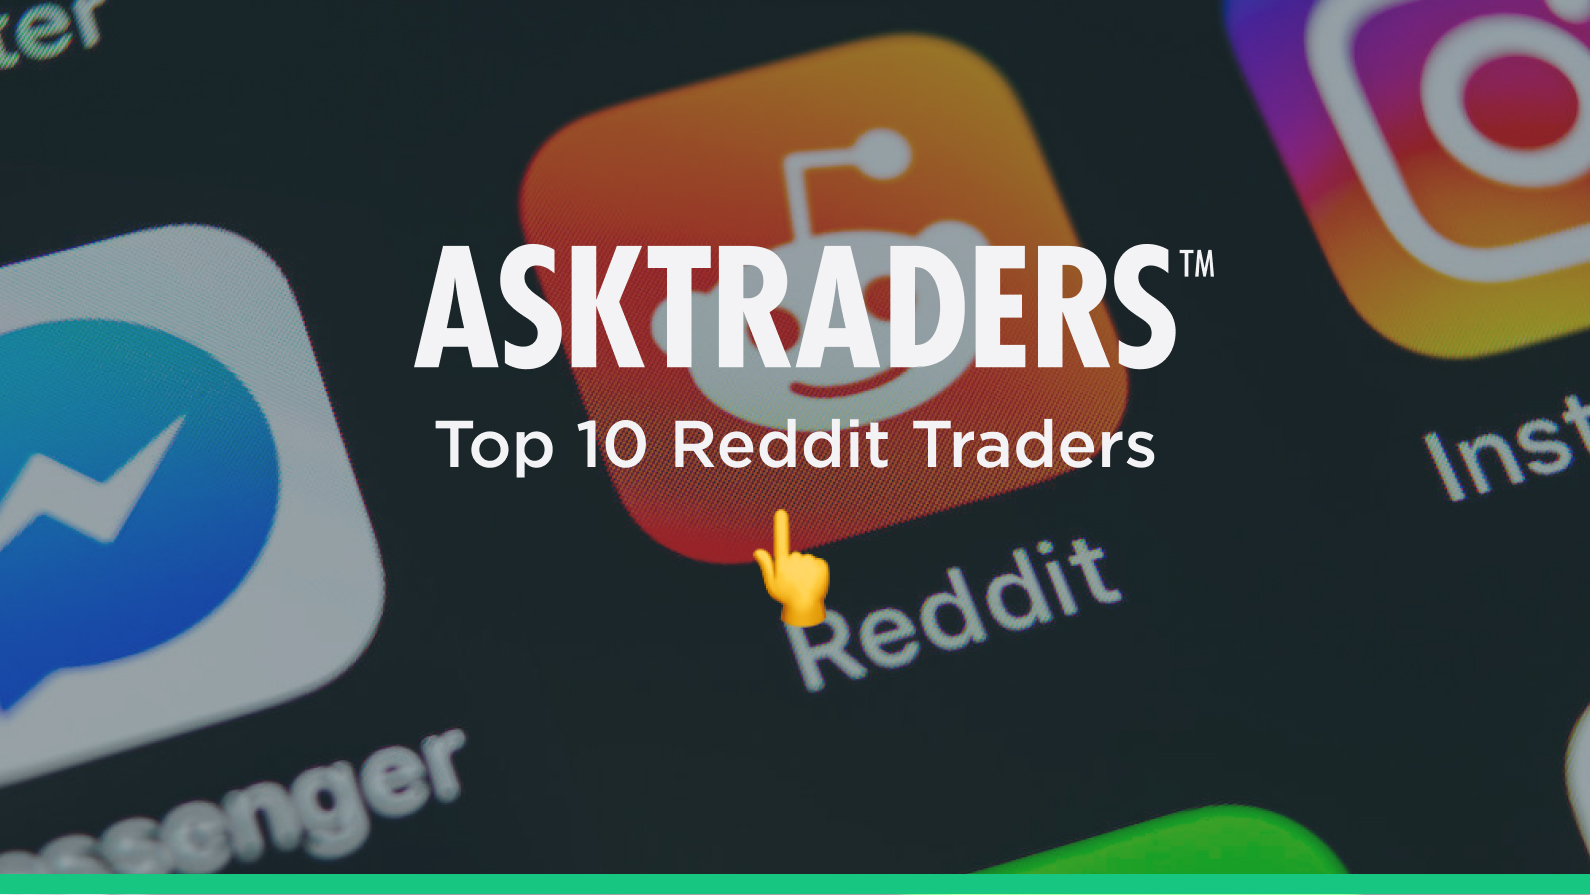 Top 10 Reddit Traders